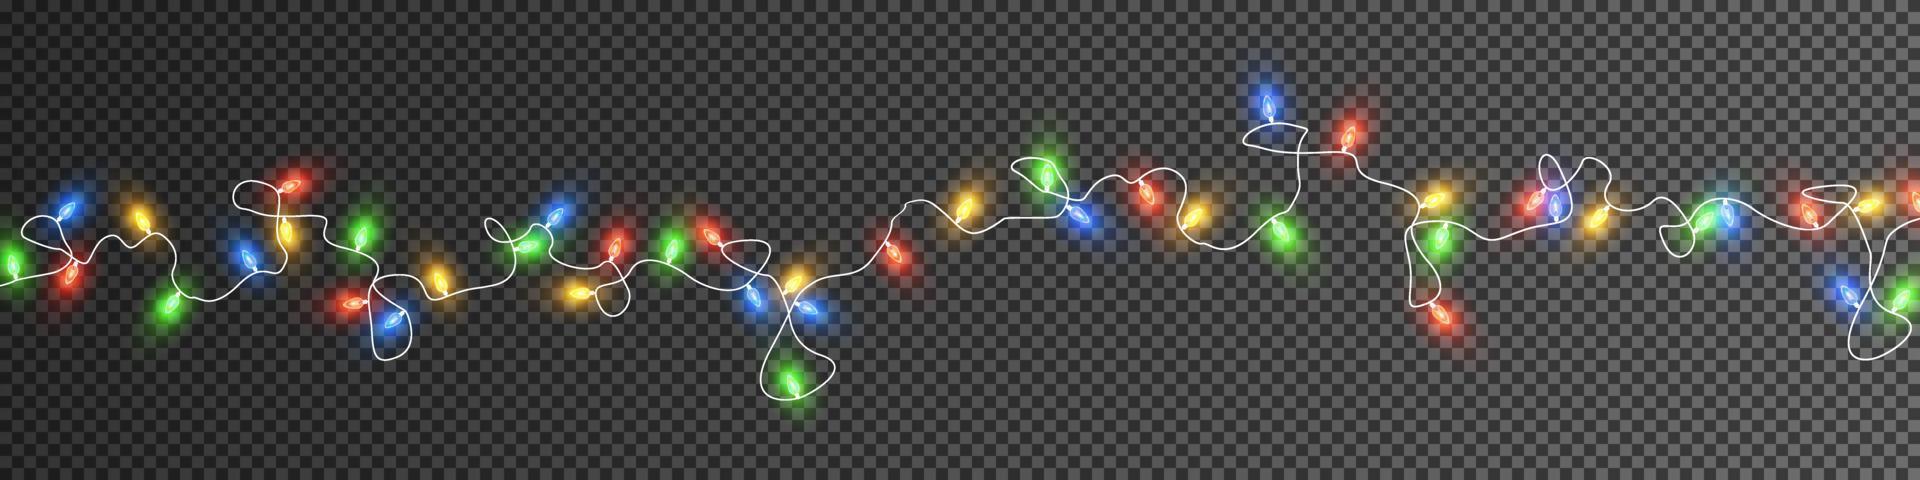 jul lampor. färgrik jul girlanger. vektor röd, gul, blå och grön glöd ljus lökar på trådar isolerat.